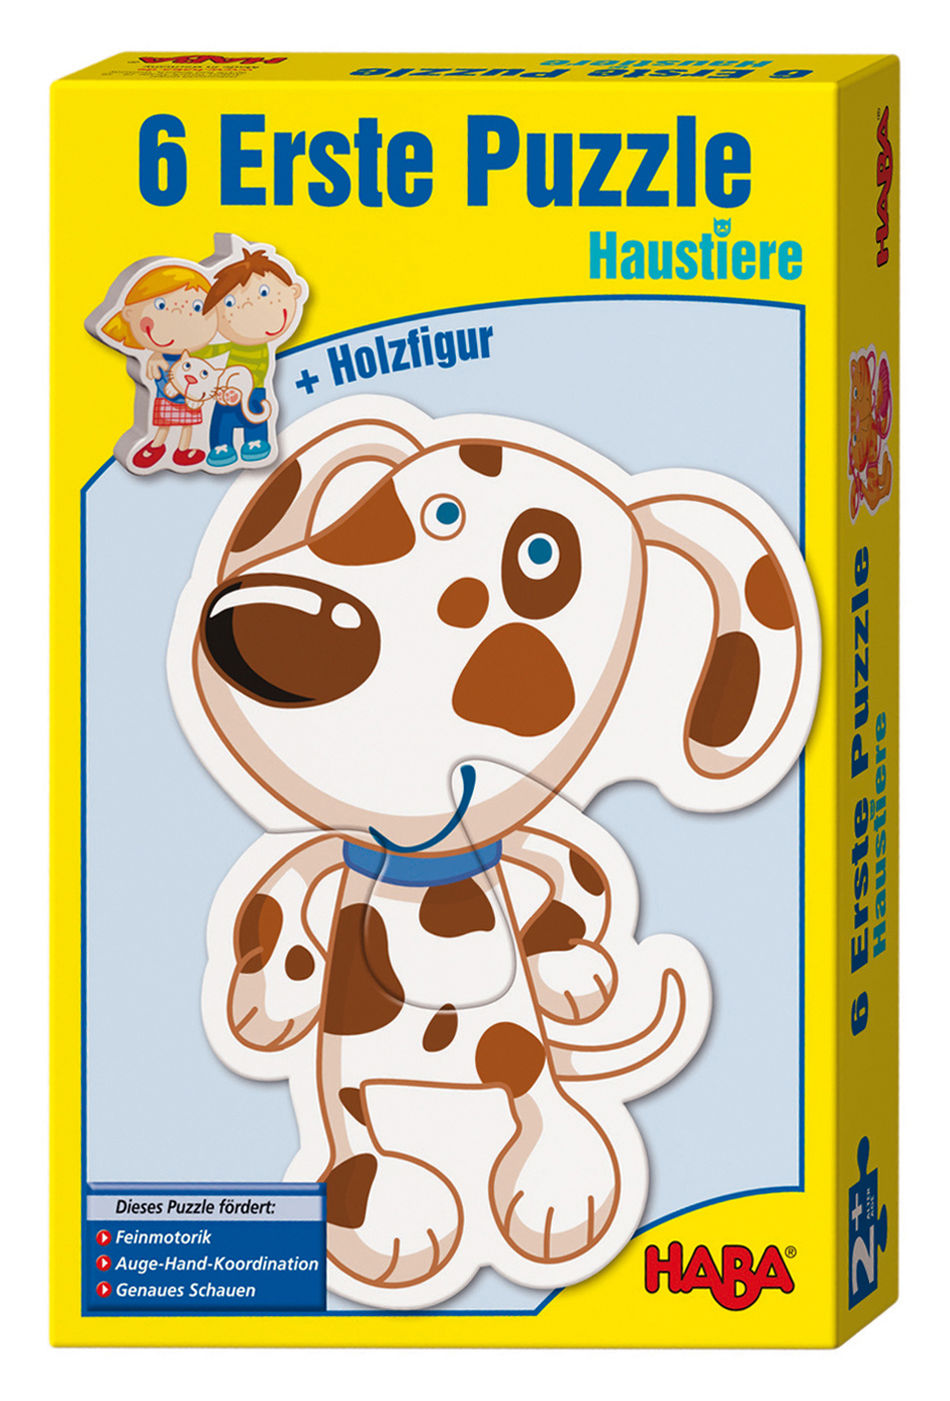 HABA 3902 6 Erste Puzzles Haustiere + Holzfigur | Weltbild.ch